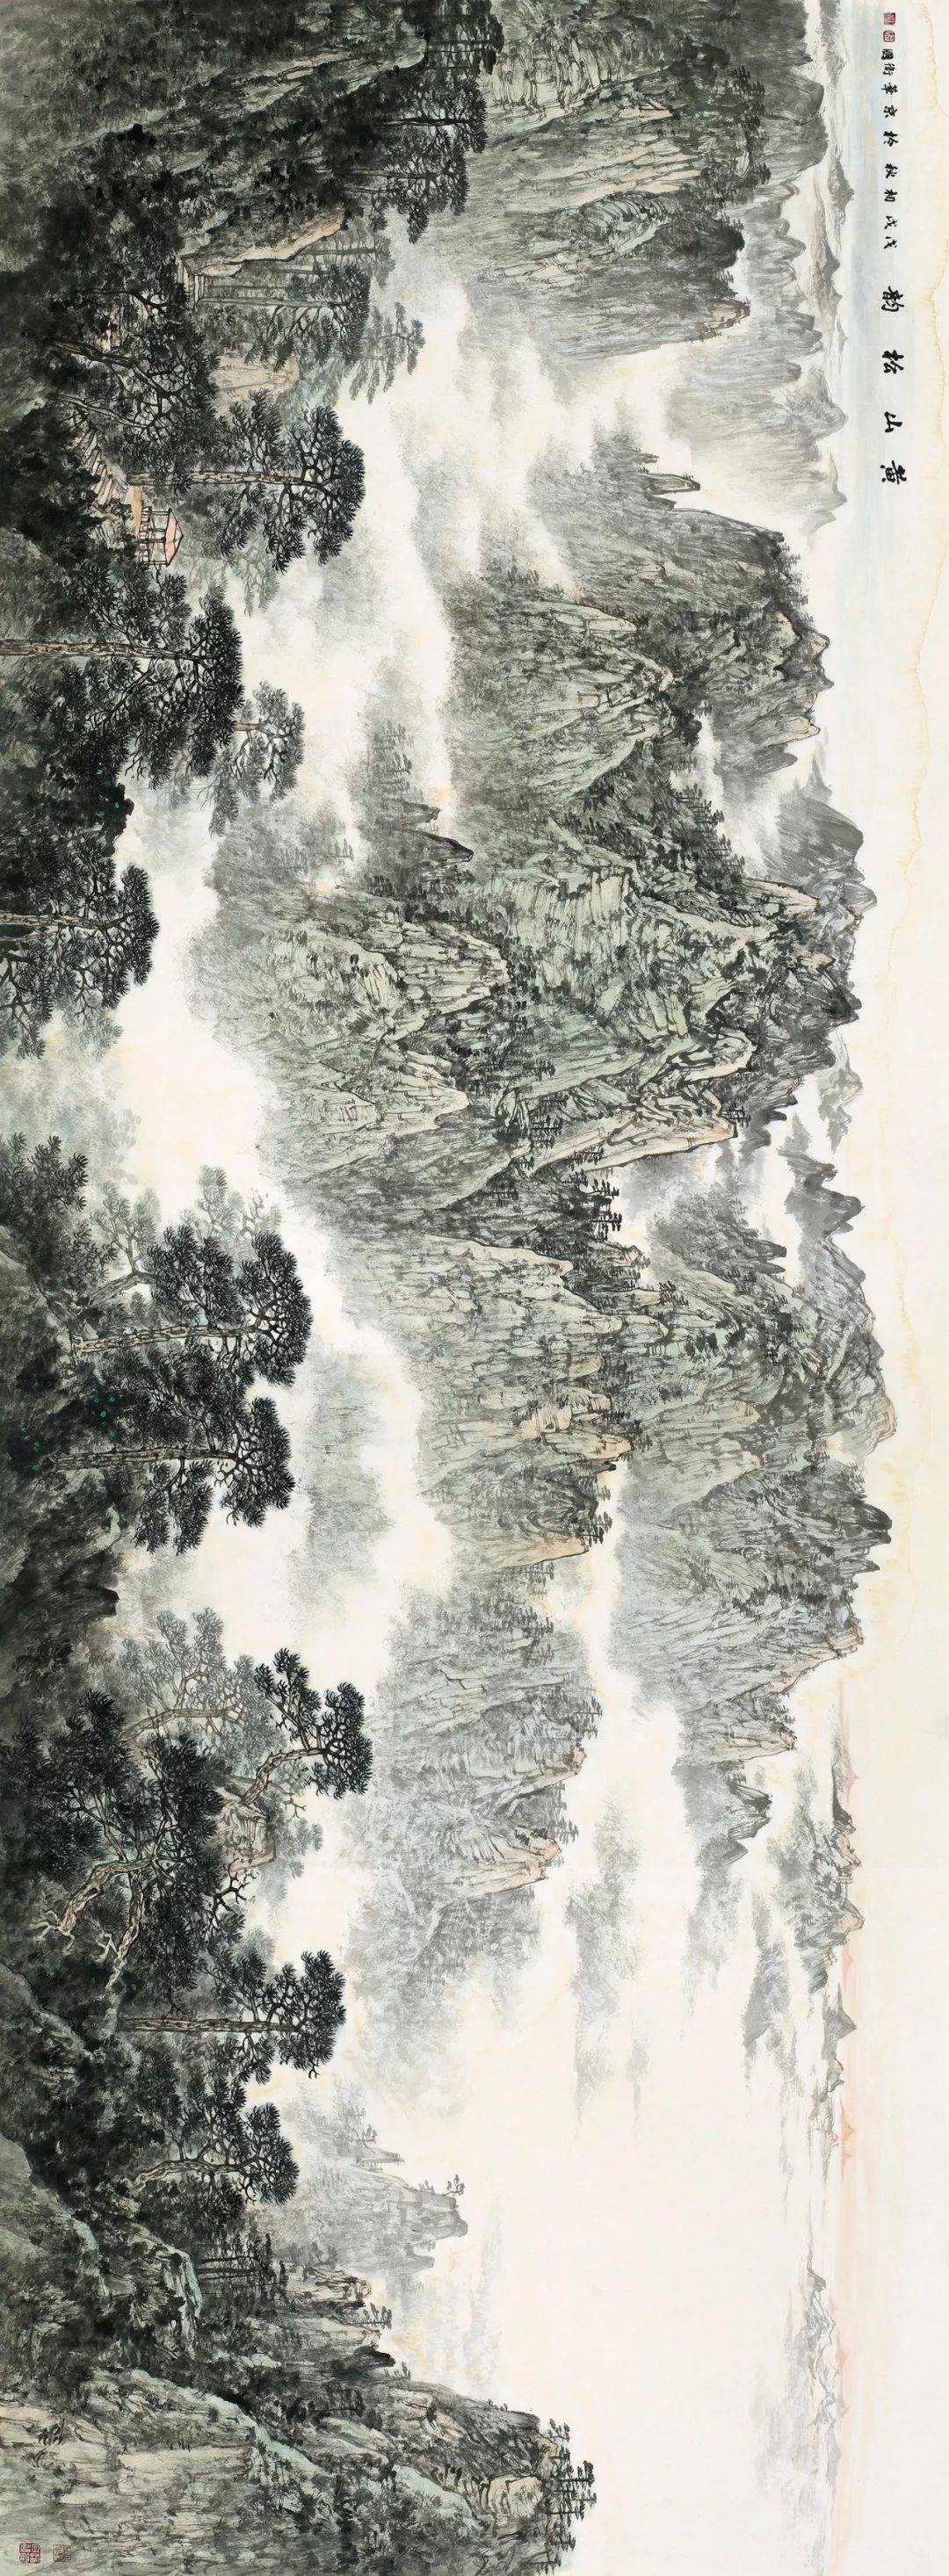 山外人间出古入今的山水家园徐卫国山水画作品在北京画院美术馆展出